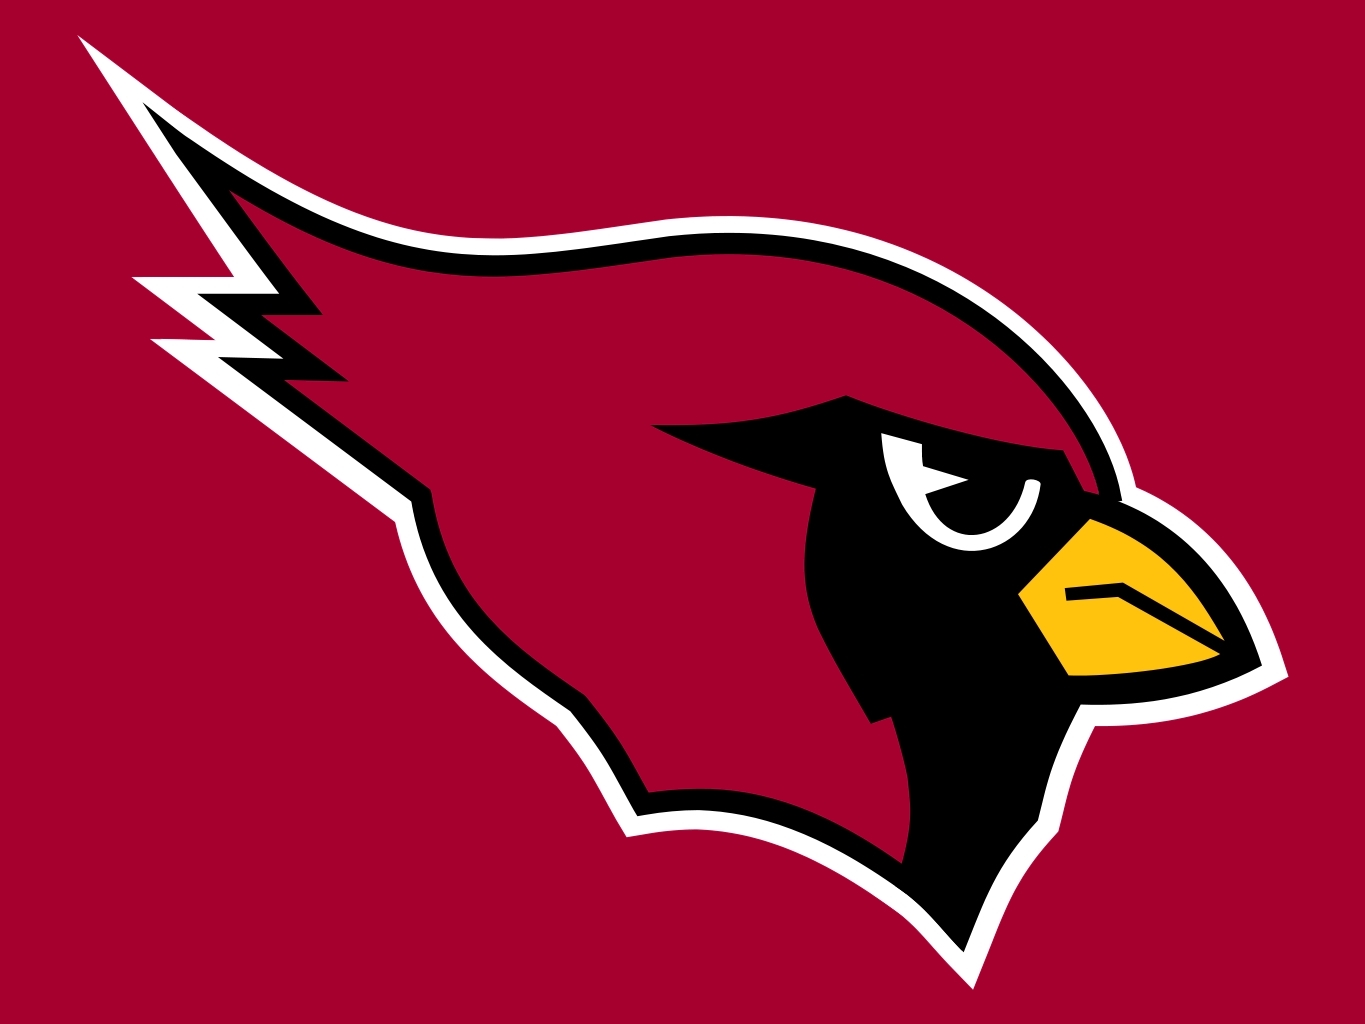 1988 Phoenix Cardinals season - Wikipedia